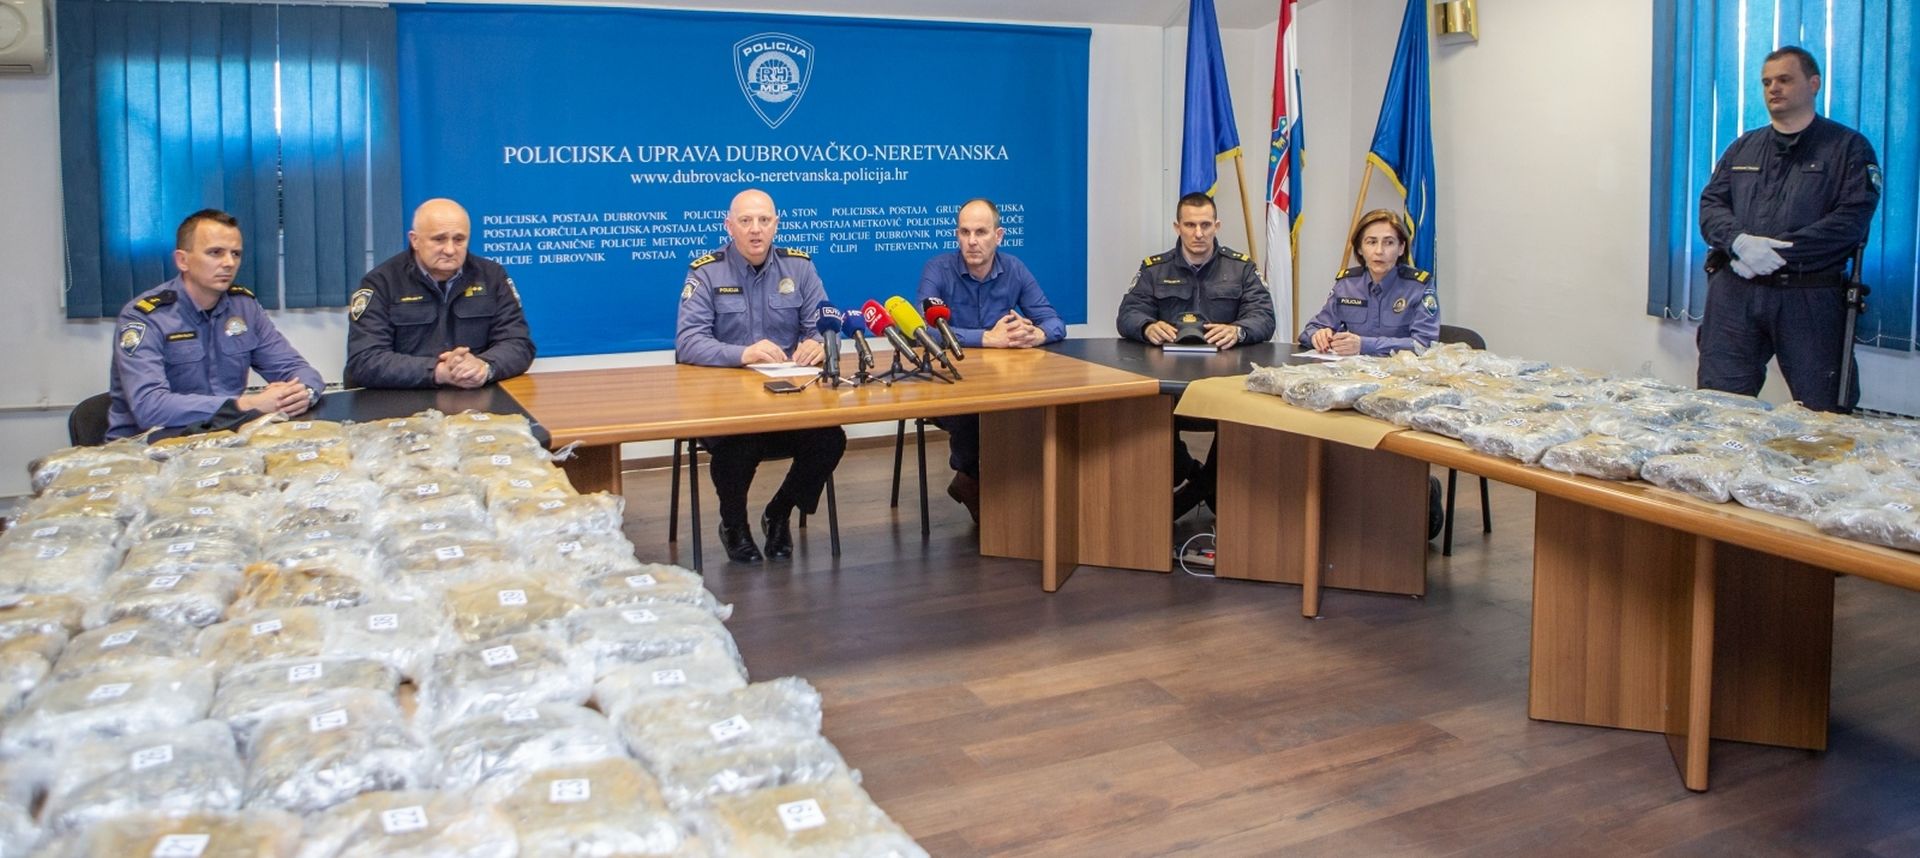 Dubrovnik: Policija zaplijenila 61 kilogram marihuane 21.02.2019., Vila Palma, Dubrovnik - Na podrucju PU dubrovacko-neretvanske je zaplijenjena veca kolicina droge, a o dovrsenom opseznom kriminalistickom istrazvanju okoncanom proteklih dana u ovoj Policijskoj upravi govorio je na izvanrednoj konferenciji za medije nacelnik Ivan Pavlicevic sa suradnicima. Pronadjen je 61 kilogram marihuane pakiran u 118 paketica.
Photo: Grgo Jelavic/PIXSELL